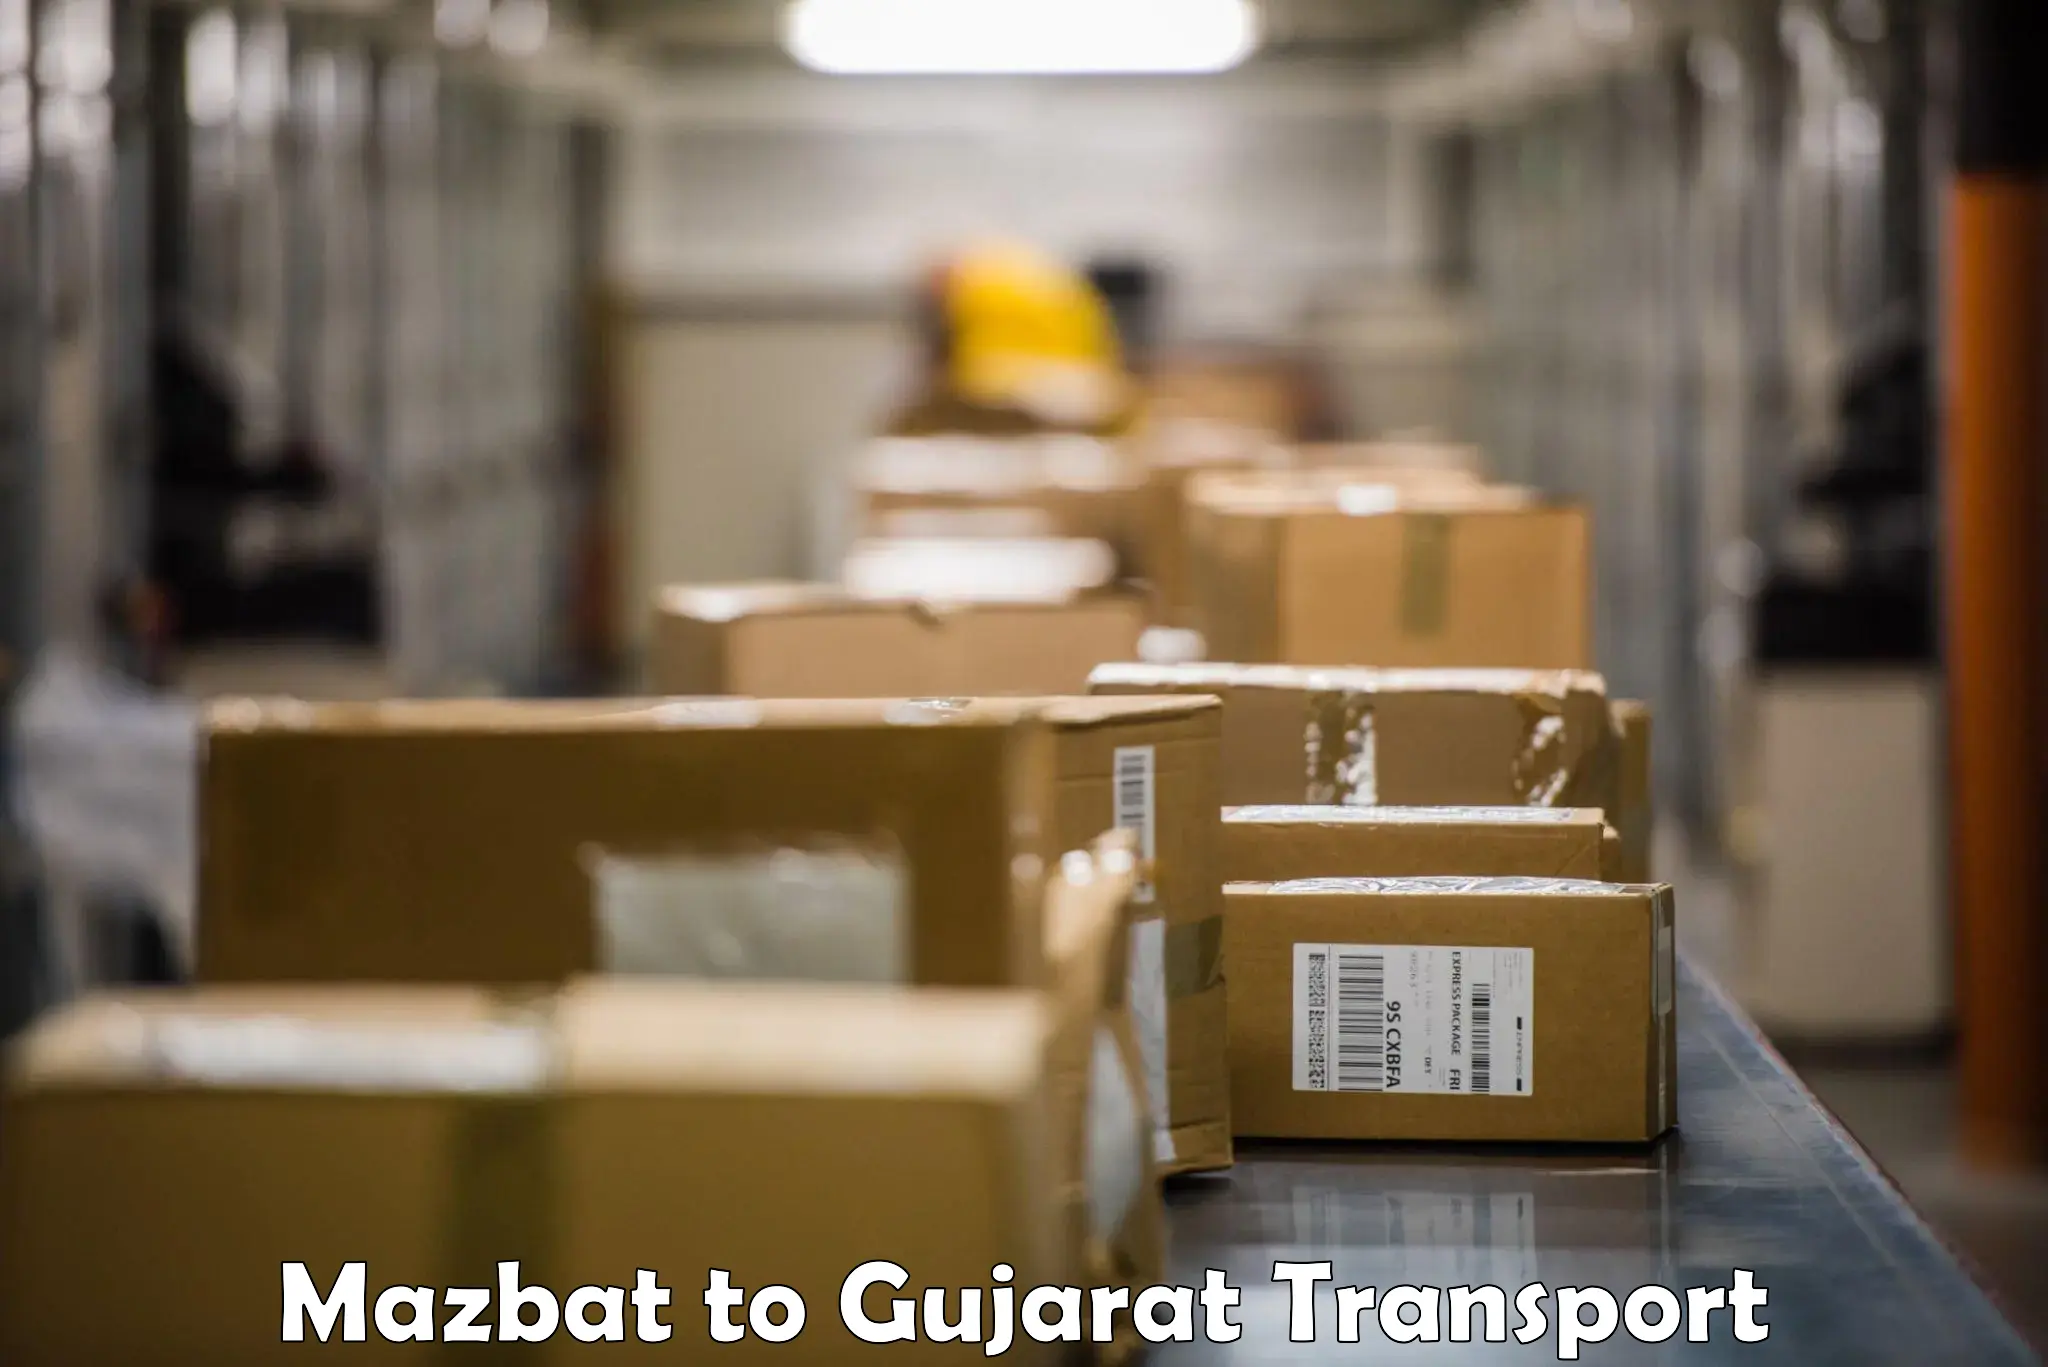 Cargo transport services Mazbat to Gujarat